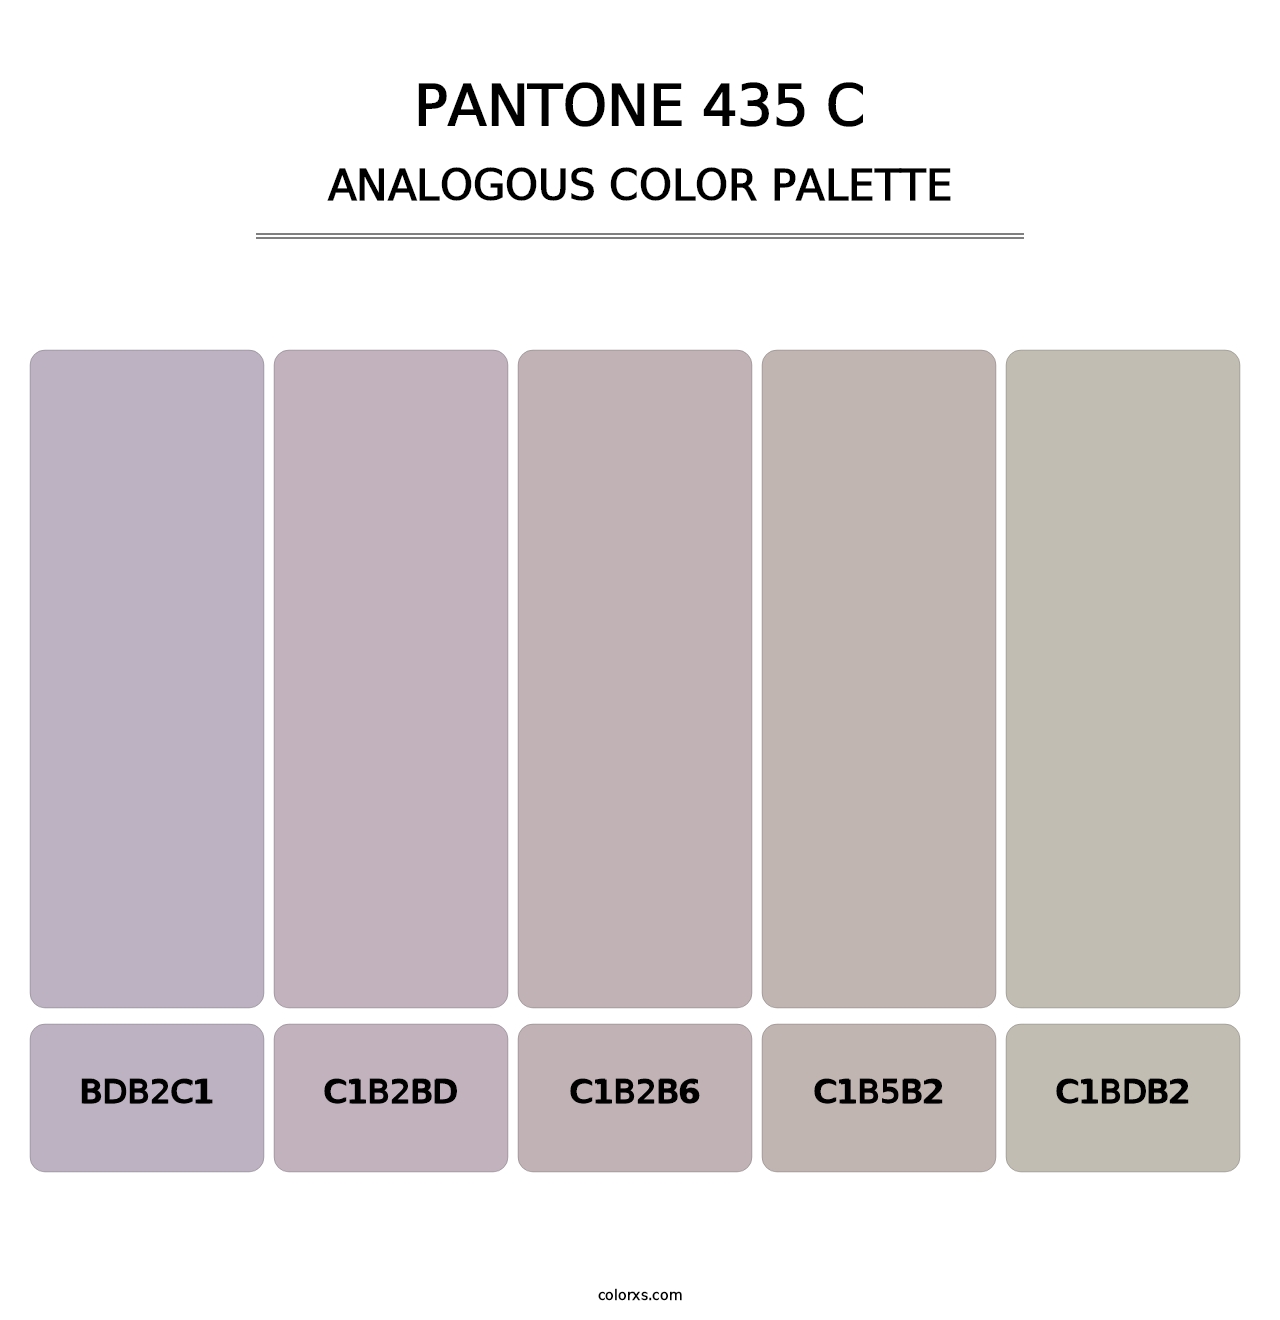 PANTONE 435 C - Analogous Color Palette